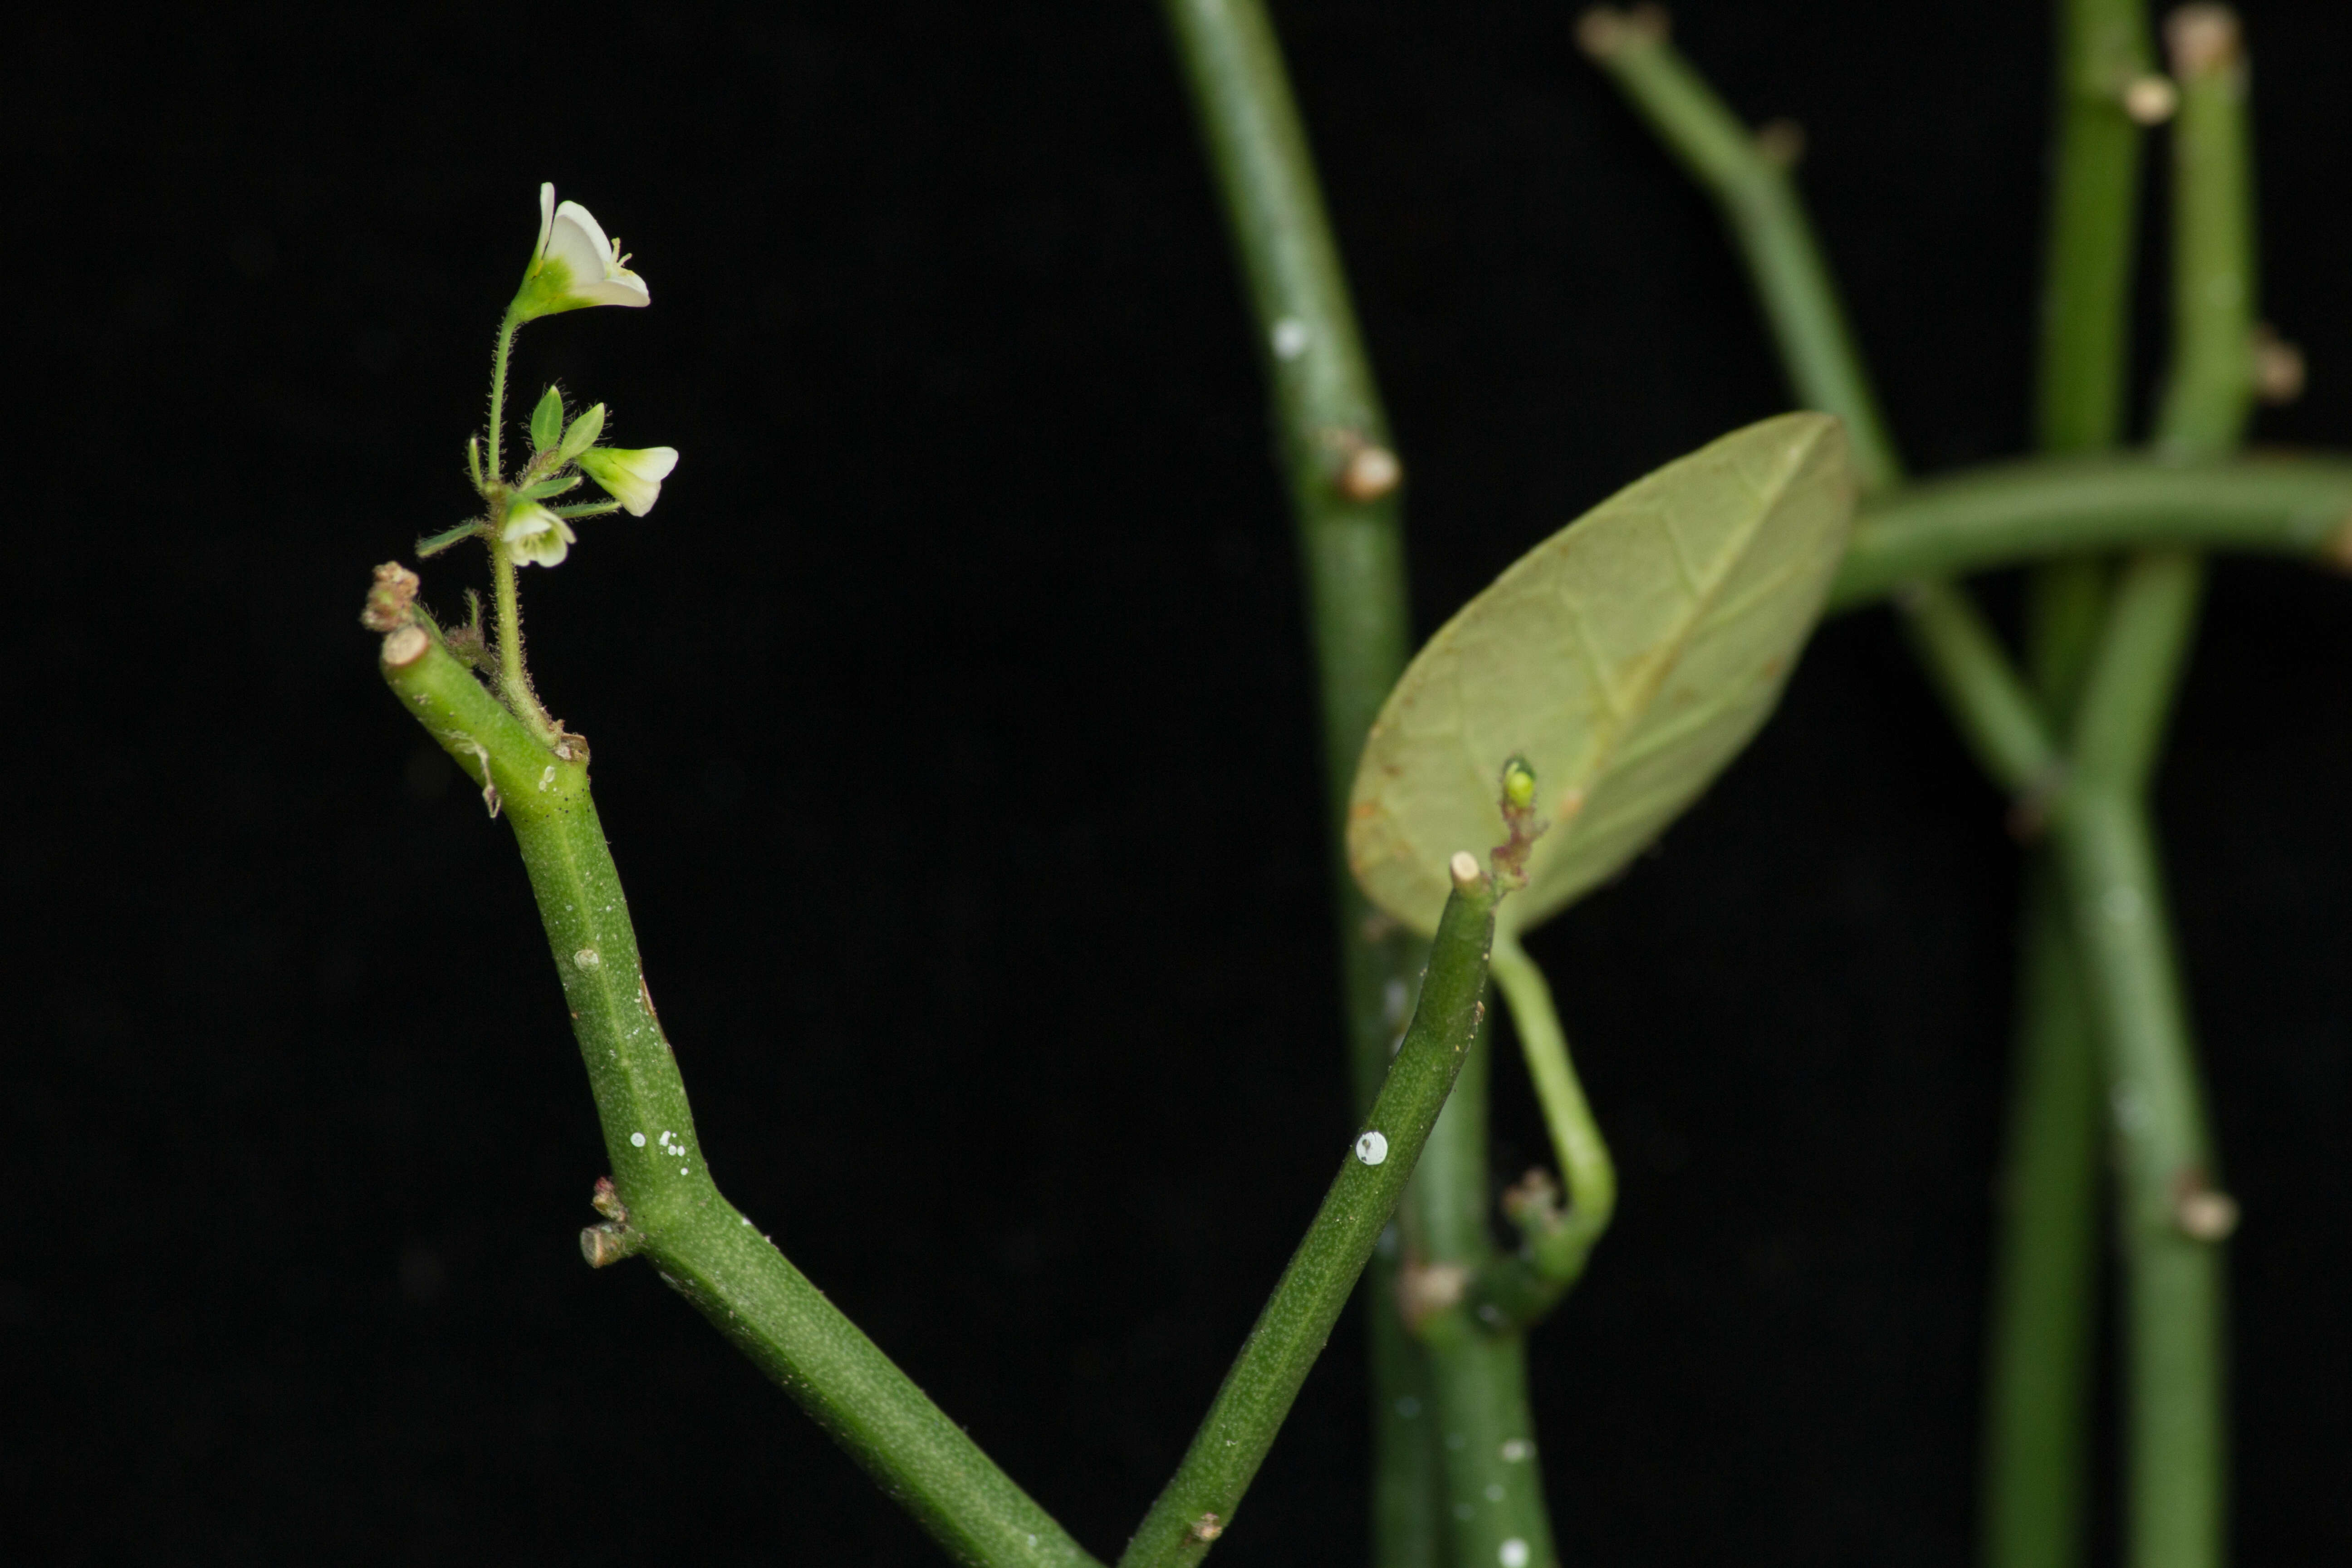 Image of Euphorbia guiengola W. R. Buck & Huft